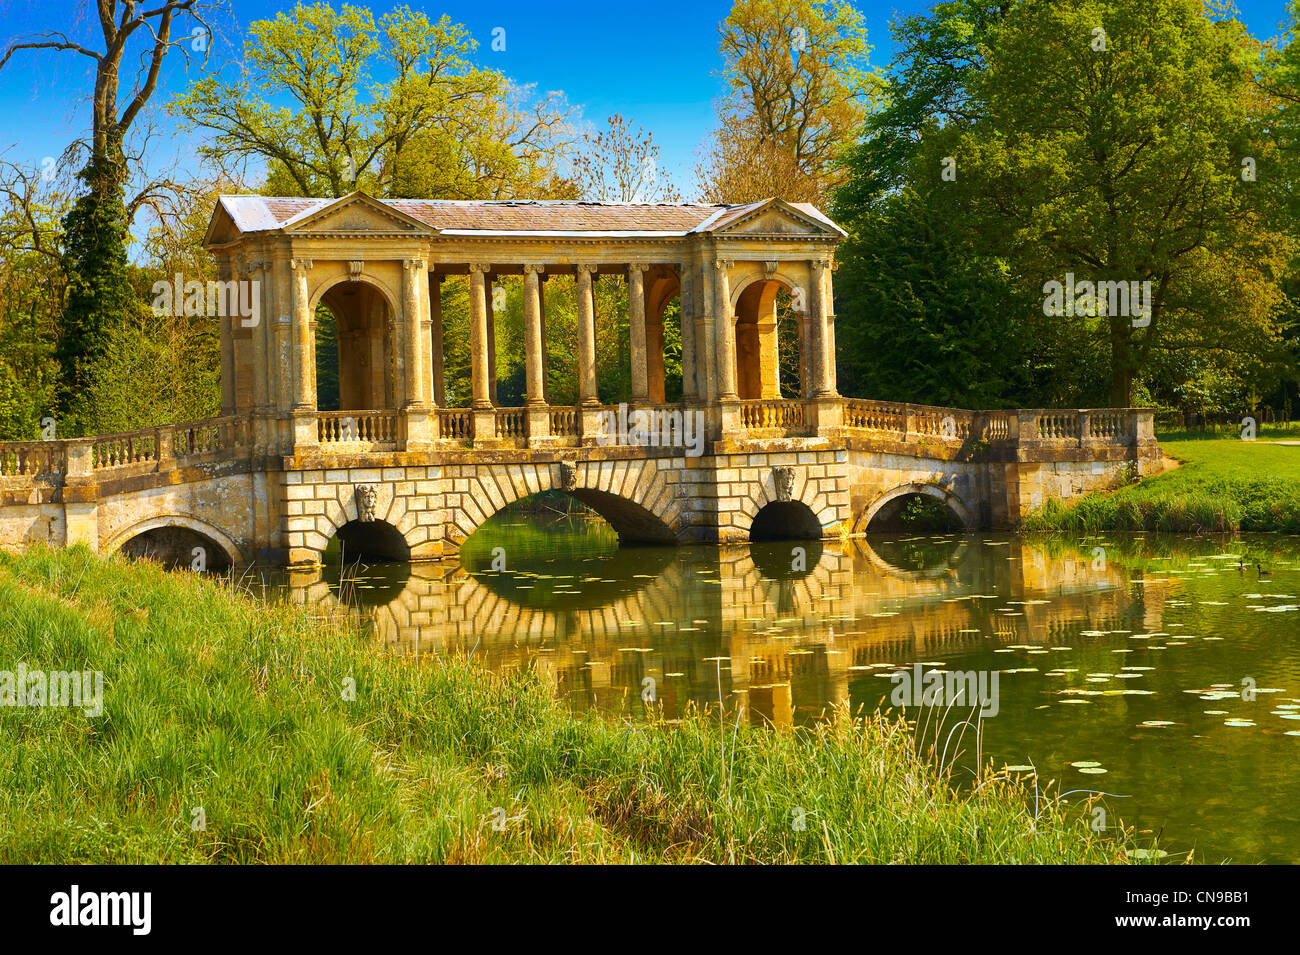 Die palladianische Brücke 1774 entworfen von James Gibbs über dem See in den englischen Landschaftsgärten von Stowe House Stockfoto